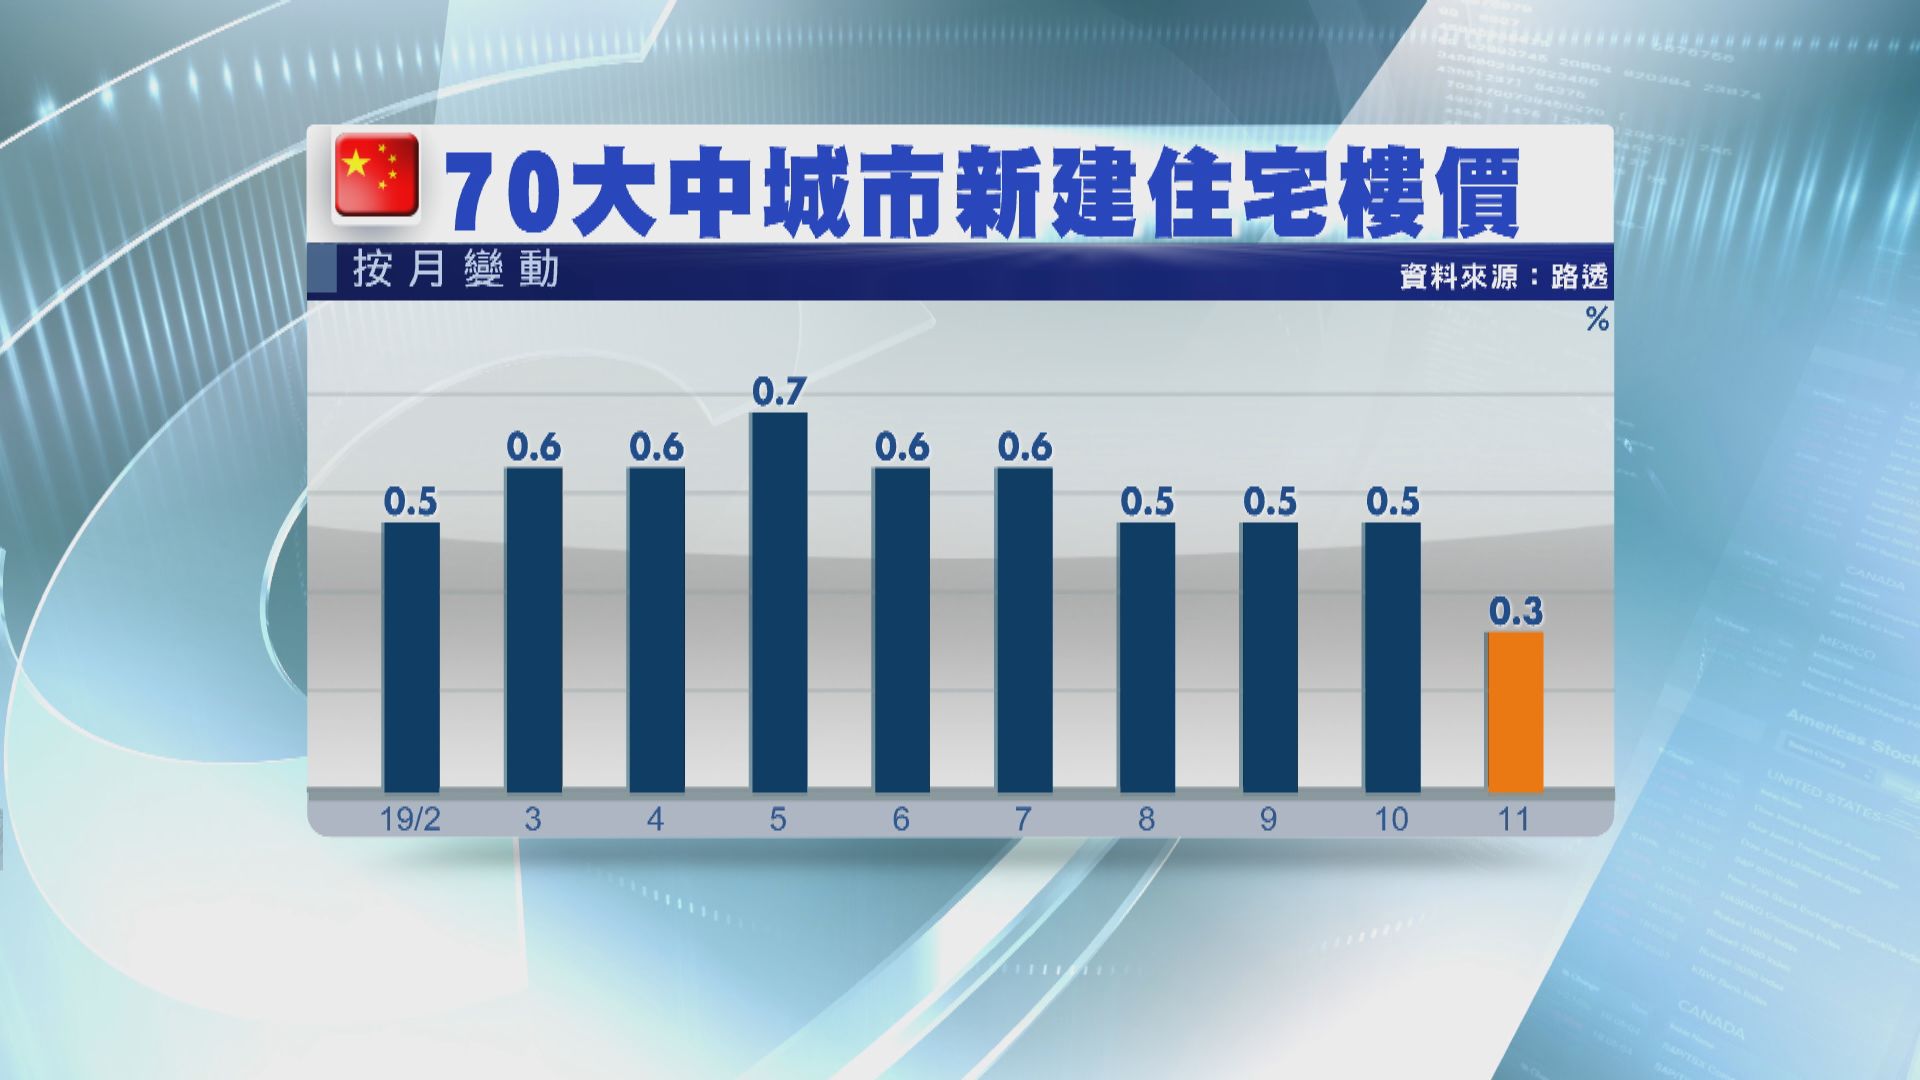 【中國樓市】11月新樓樓價按月升幅放緩至近三年最慢